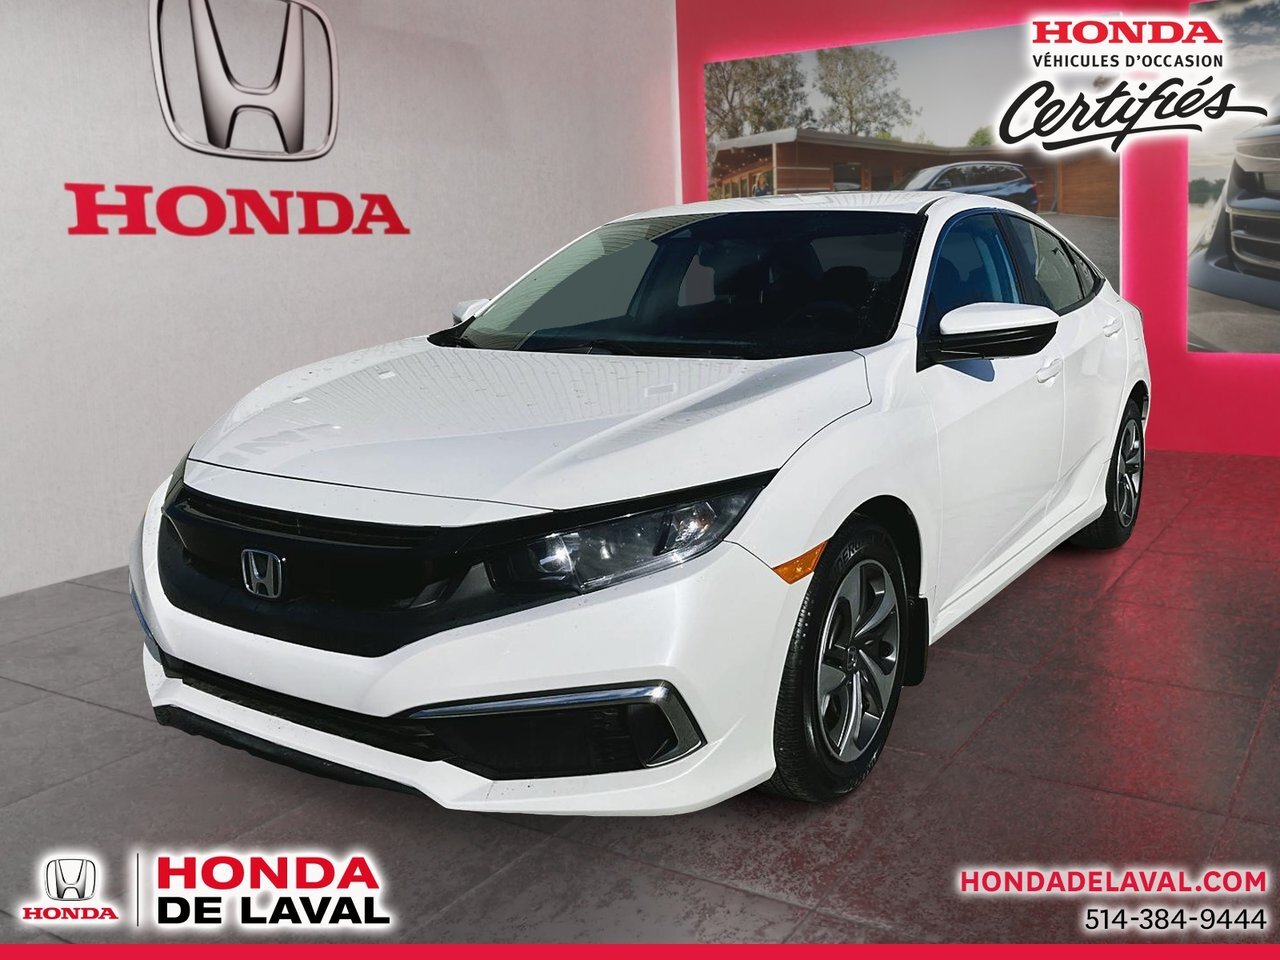 2019 Honda Civic LX HONDA CERTIFIE